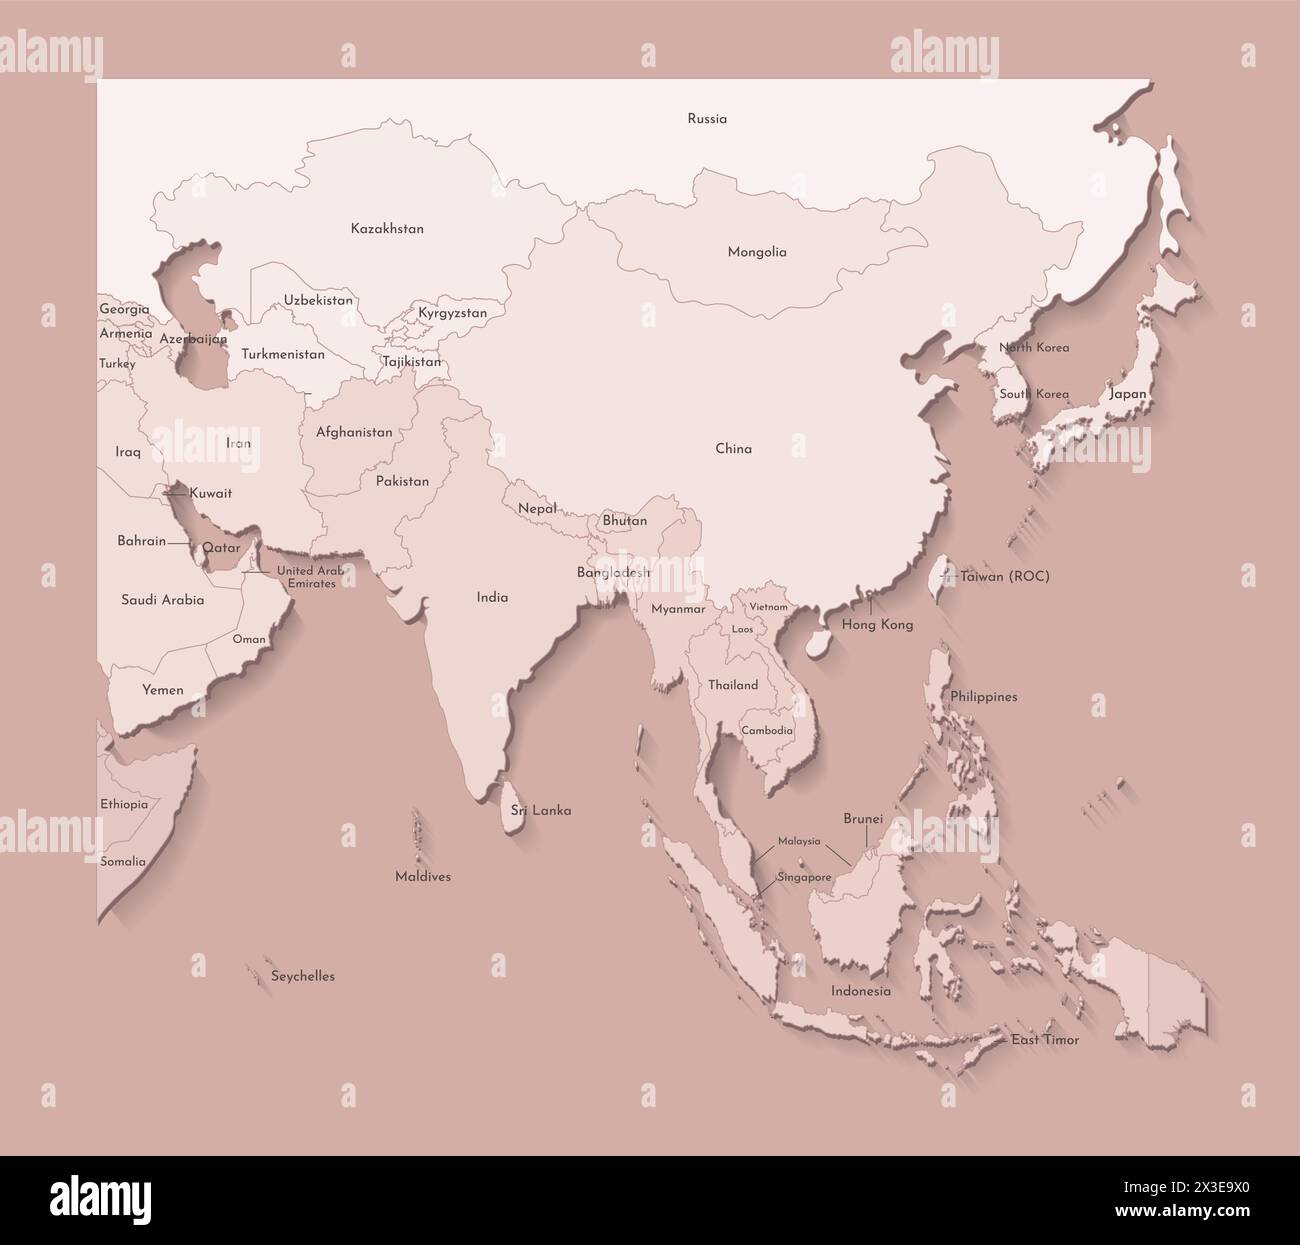 Illustrazione vettoriale con continente asiatico con confini di paesi e nomi di stati. Mappa politica di colore marrone con regioni. Sfondo beige Illustrazione Vettoriale